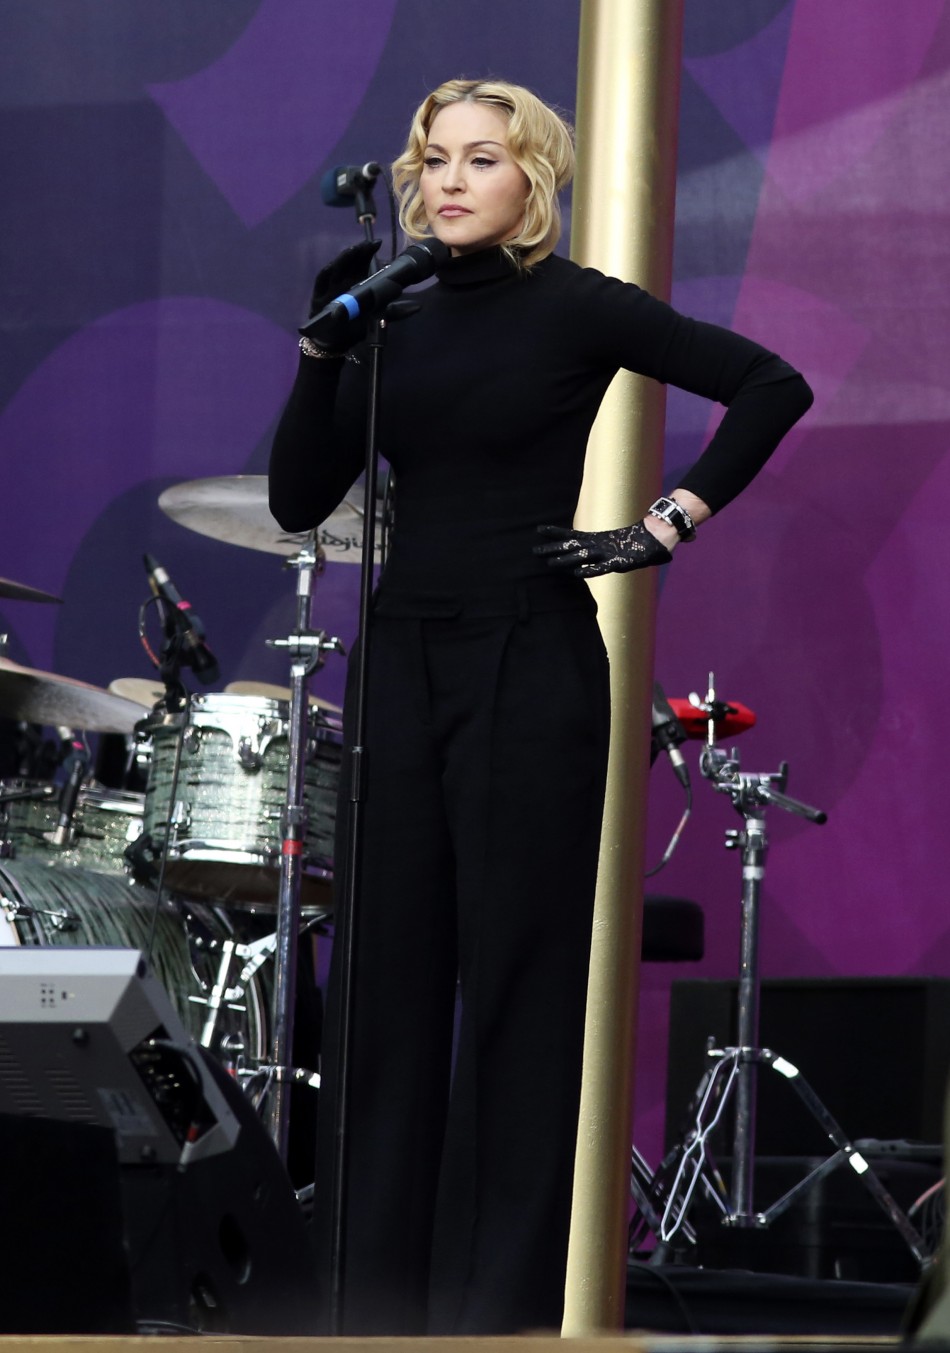 Singer Madonna speaks at The Sound of Change concert